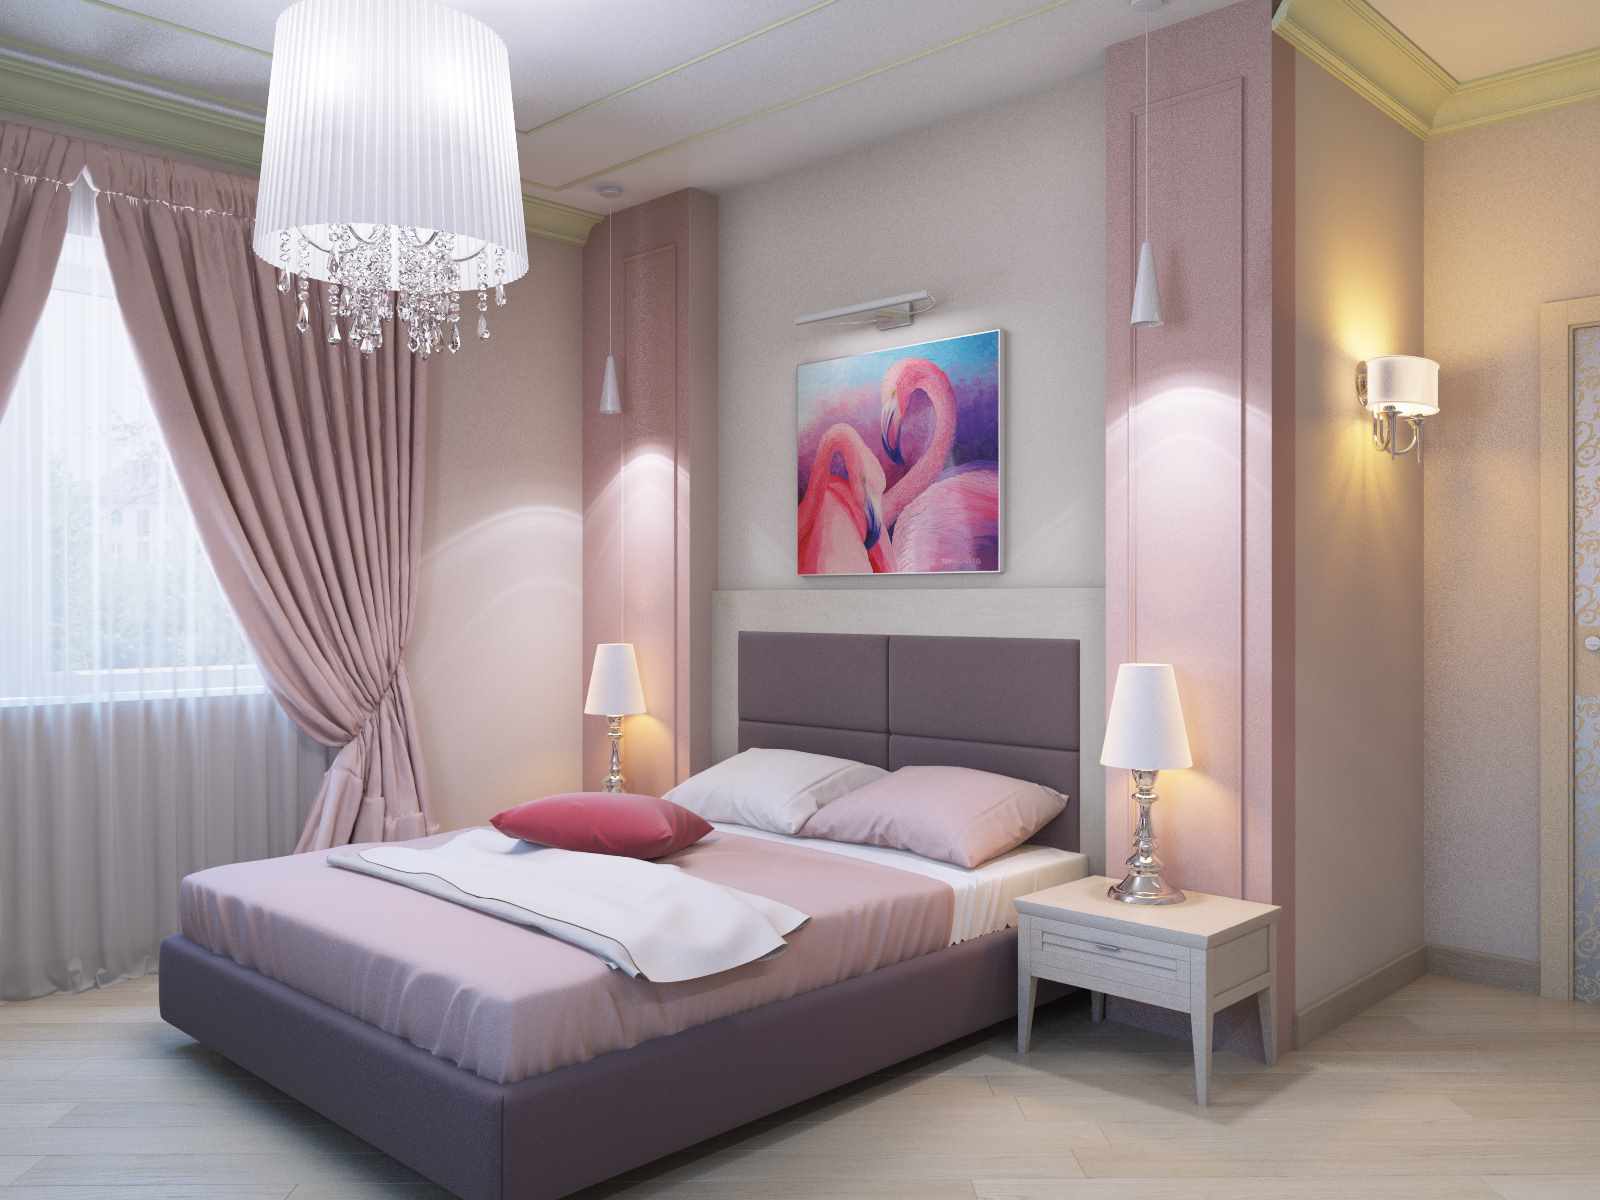 Een voorbeeld van een heldere decoratie van de stijl van muren in de slaapkamer